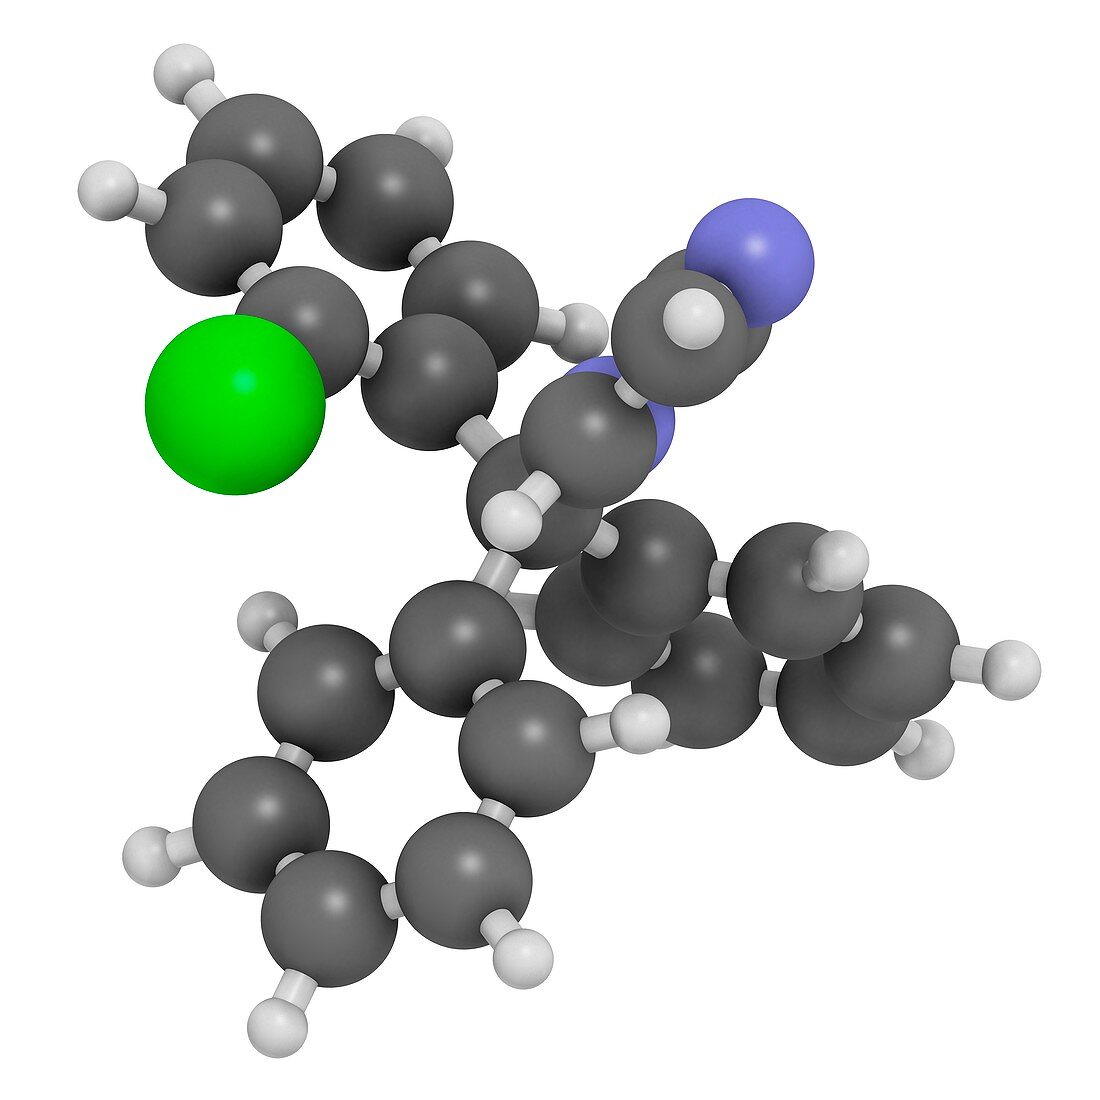 Clotrimazole antifungal drug molecule